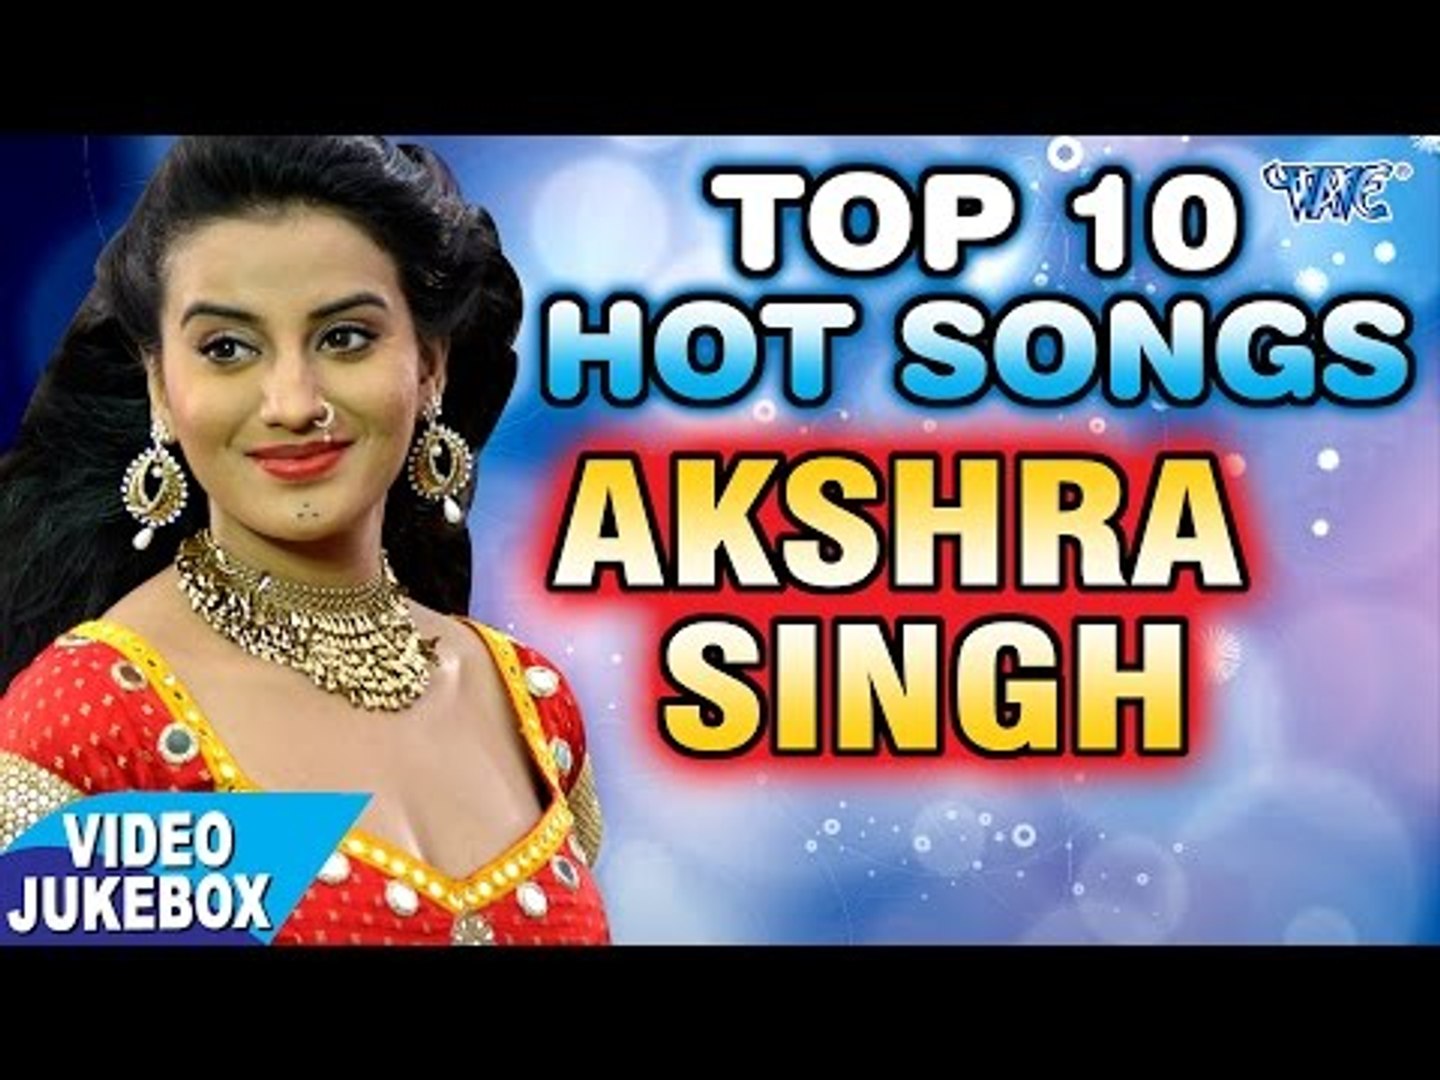 Akshara Sing Ki Chodai Video - AKSHARA SINGH TOP 10 HITS - à¤…à¤•à¥à¤·à¤°à¤¾ à¤¸à¤¿à¤‚à¤¹ à¤Ÿà¥‰à¤ª 10 à¤¸à¤¬à¤¸à¥‡ à¤¹à¤¿à¤Ÿ à¤—à¤¾à¤¨à¤¾ || Video  JukeBOX || Bhojpuri Hit Songs - video Dailymotion